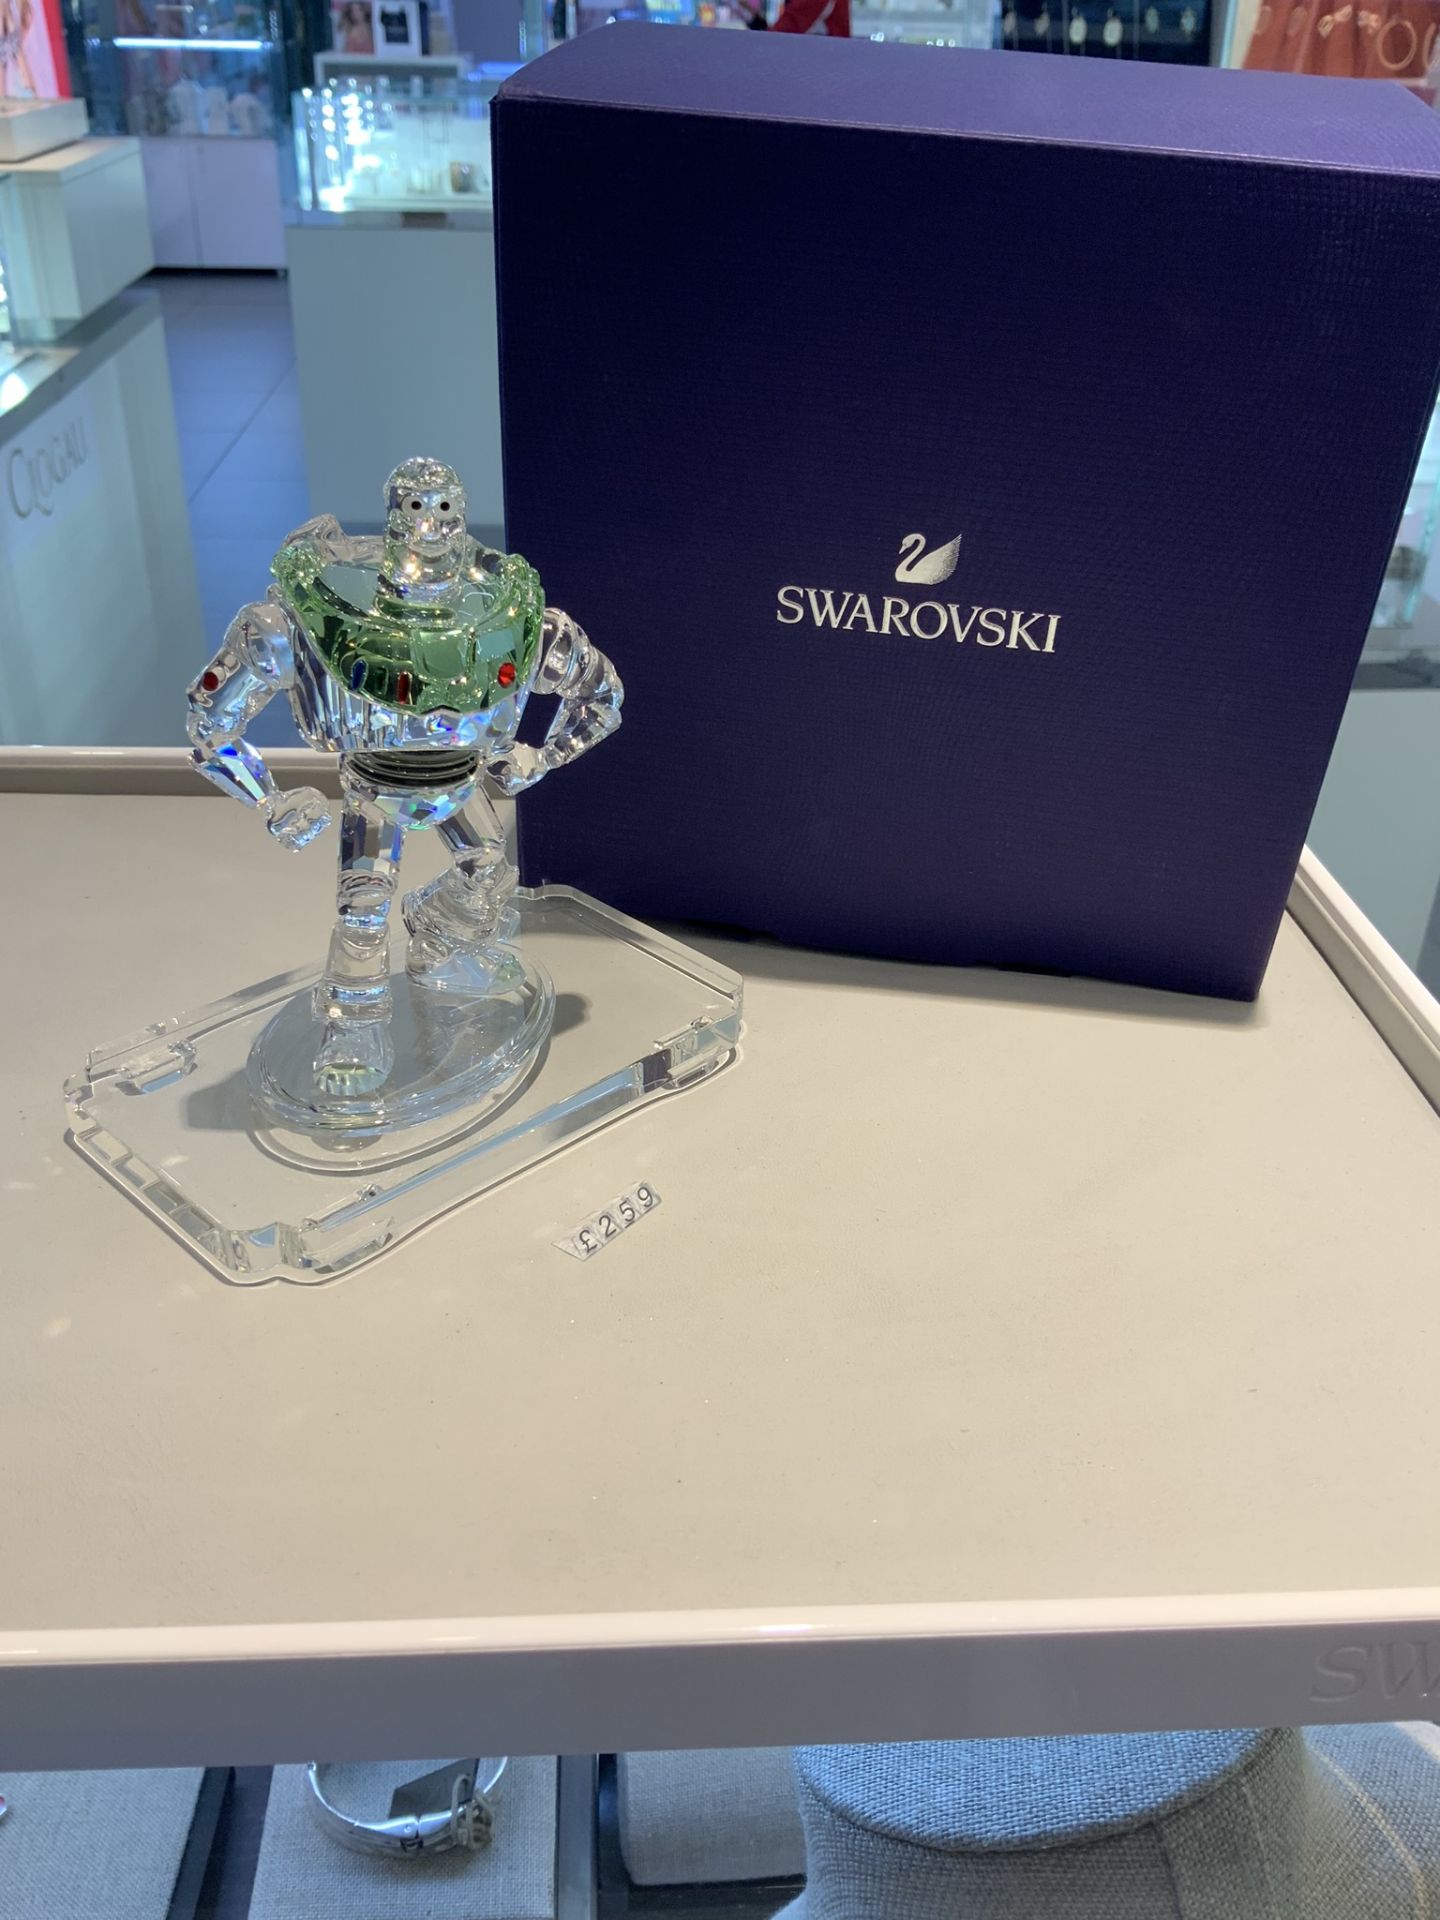 Swarovski Crystal Disney Buzz Lightyear Figurine RRP £259 - Image 2 of 3